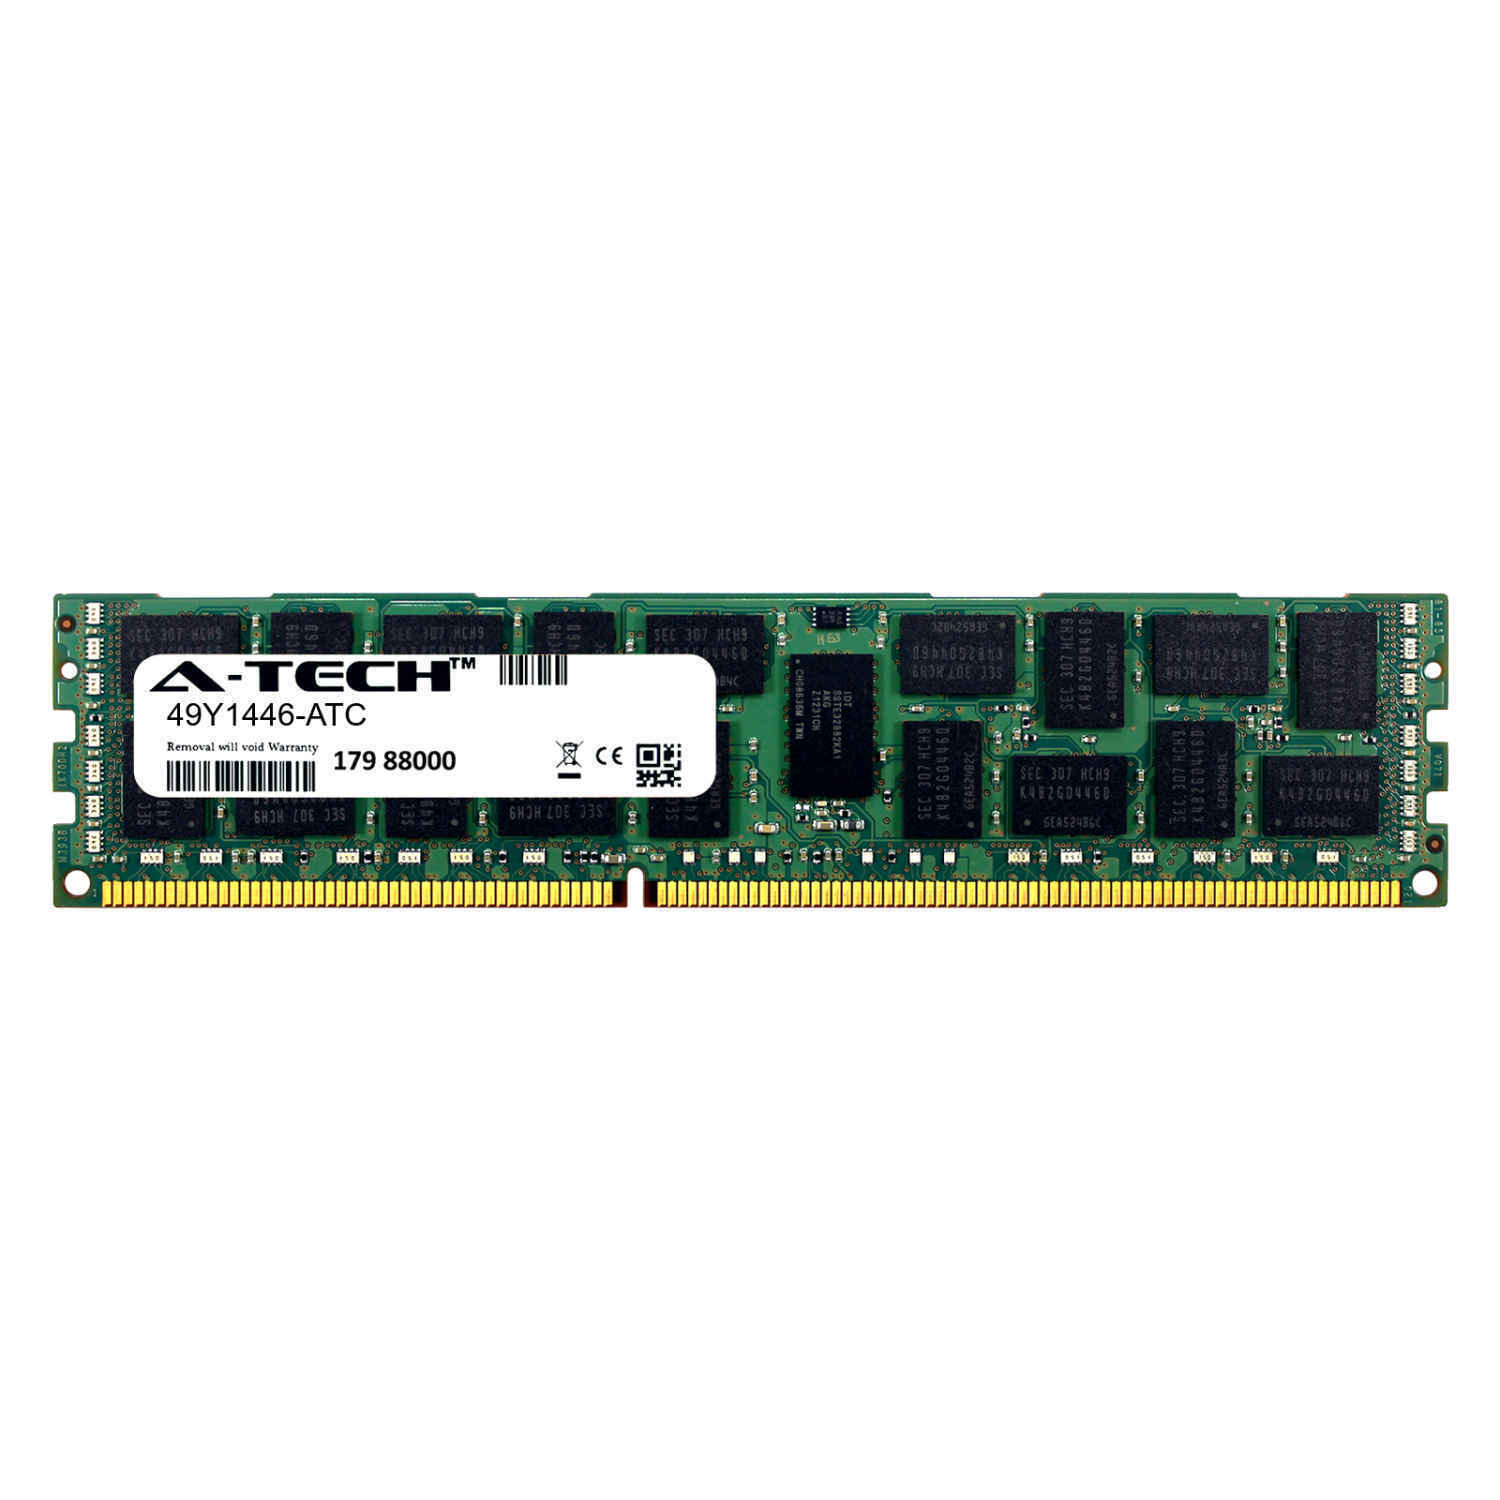 8GB DDR3 PC3-10600R 1333MHz RDIMM (IBM 49Y1446 Equivalent) Server Memory RAM